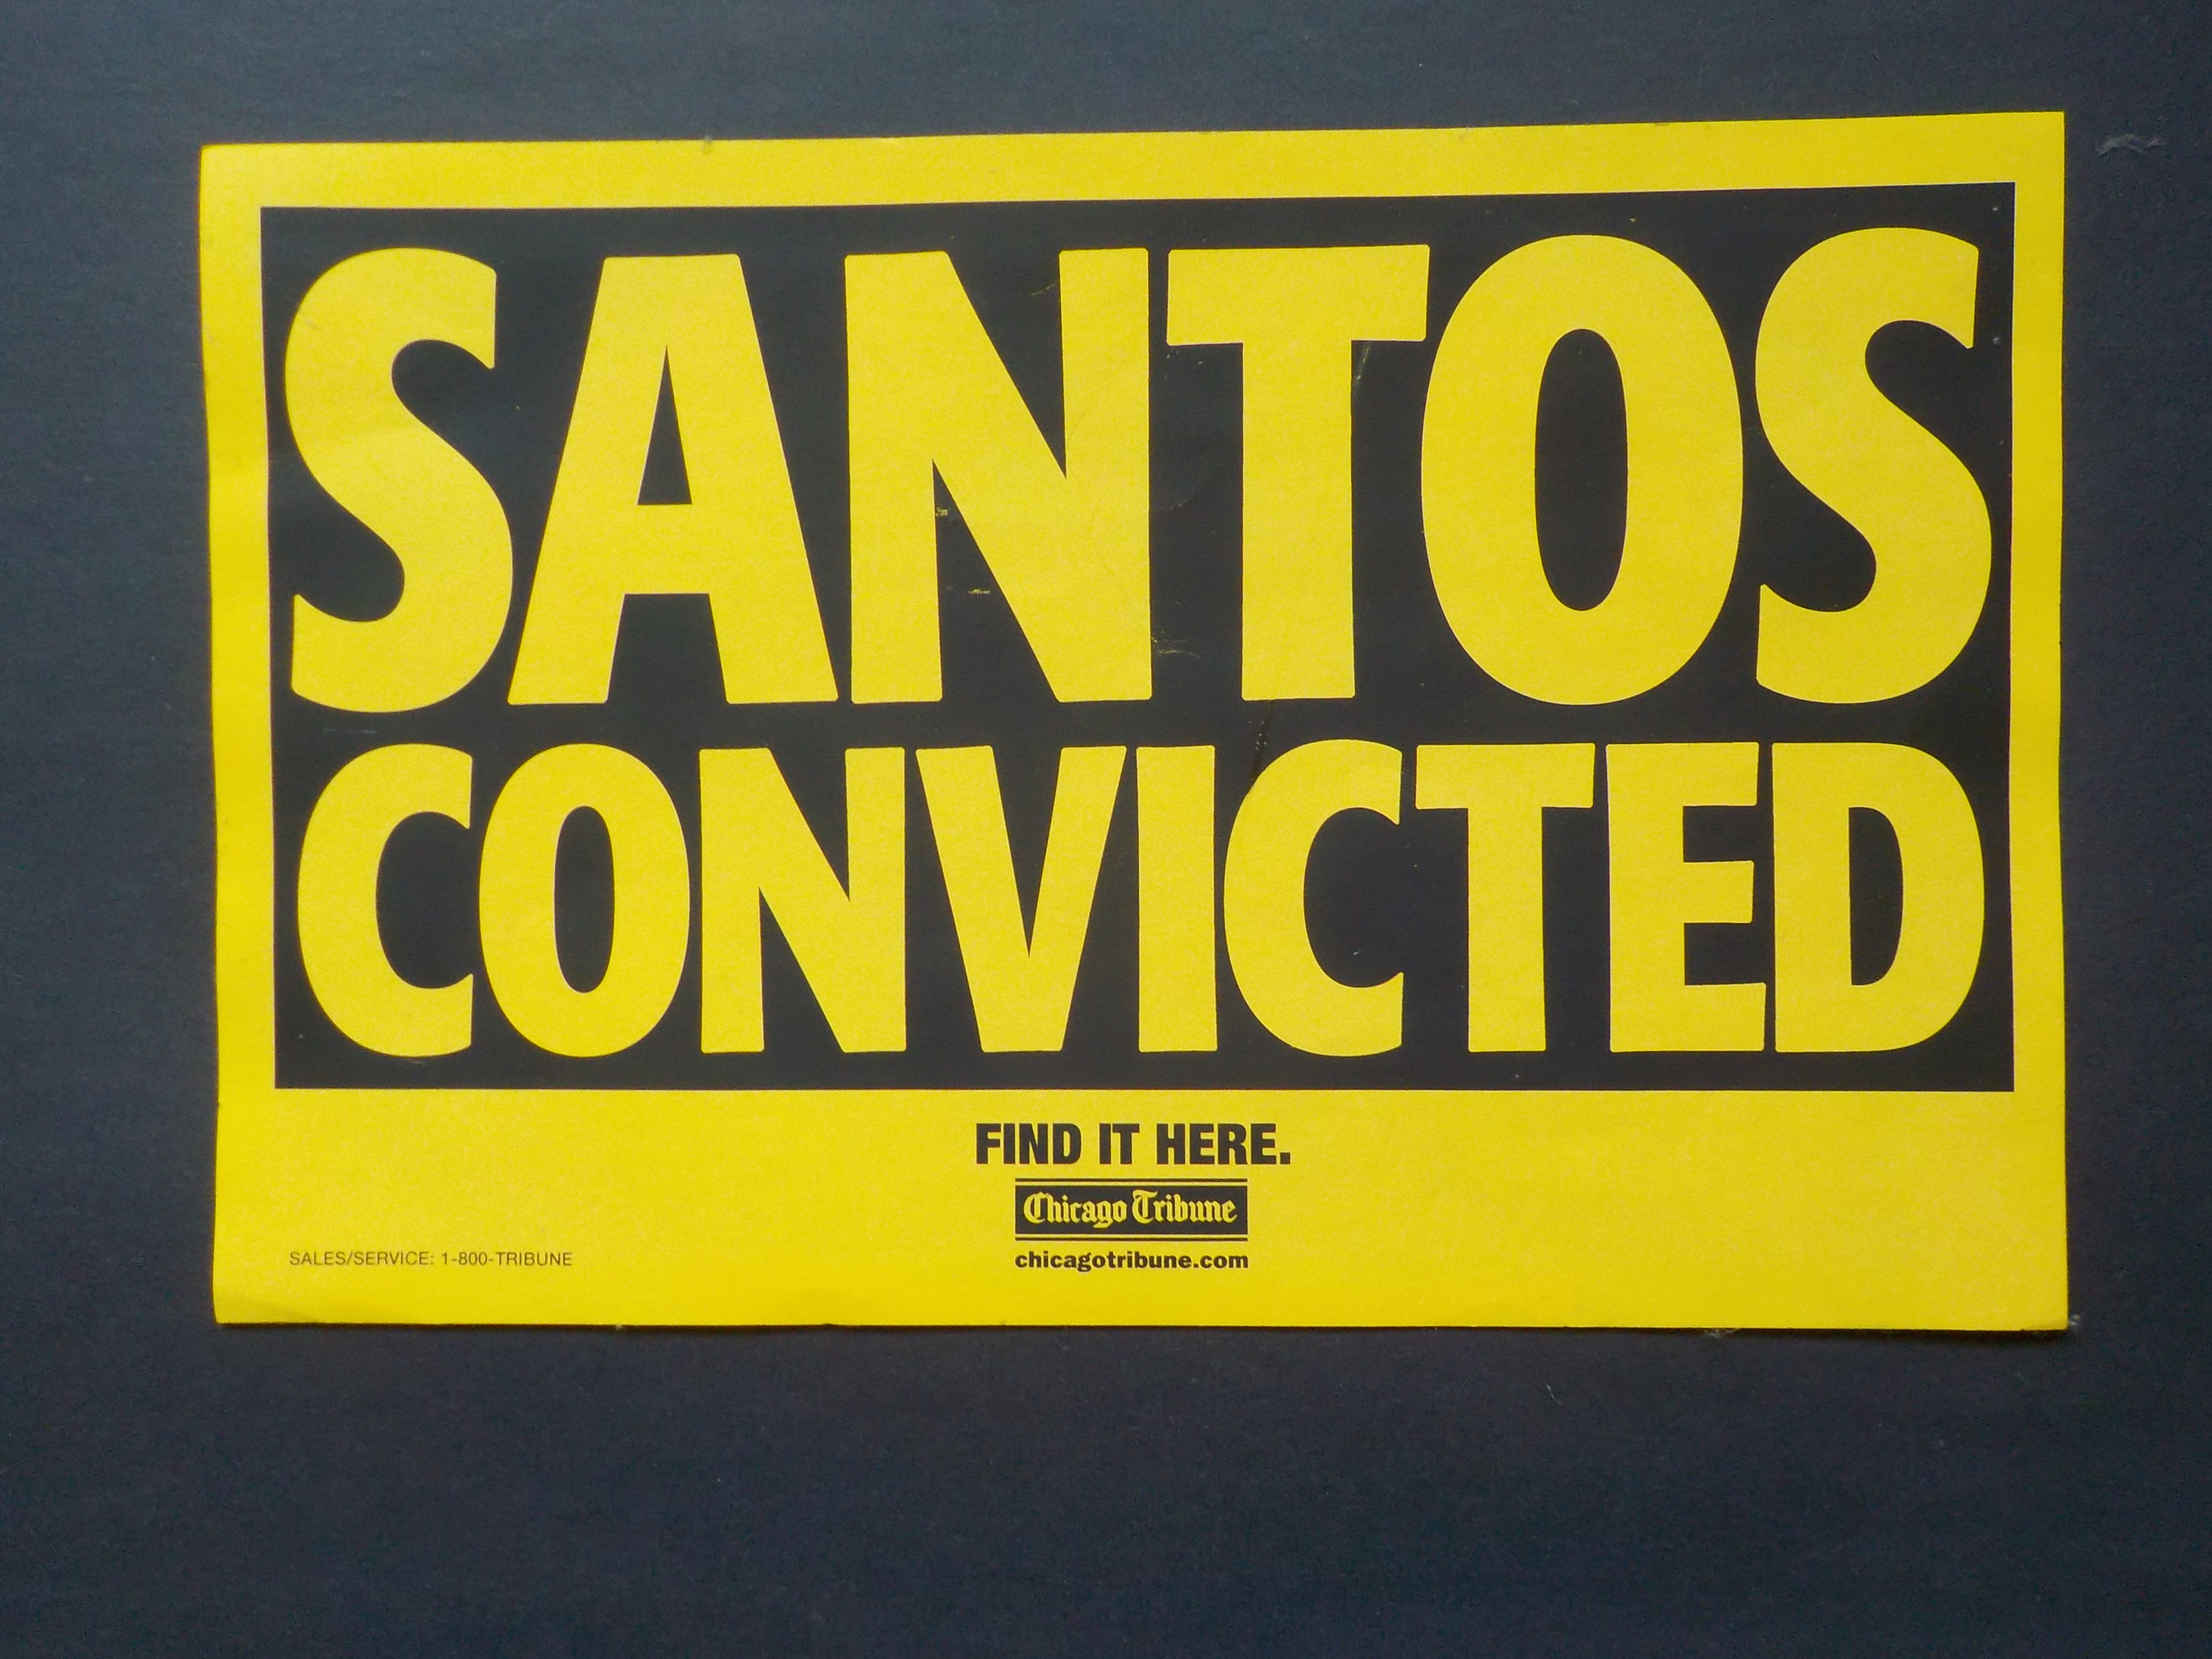 Santos Convicted